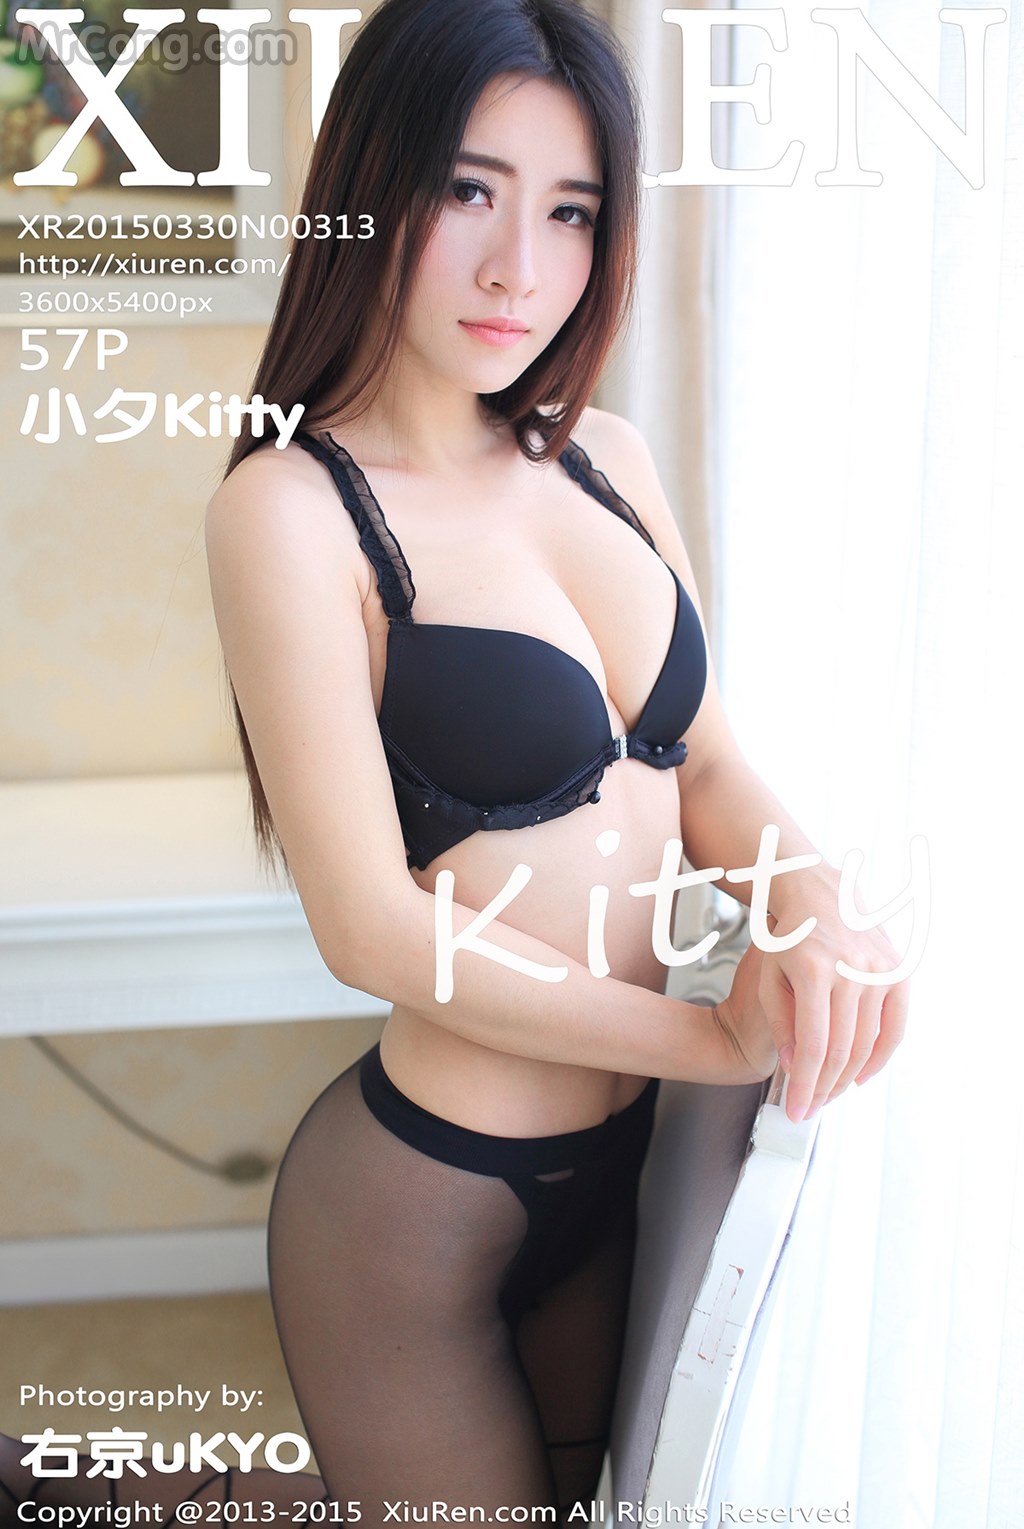 XIUREN No.313: Model Kitty (小 夕) (58 pictures)